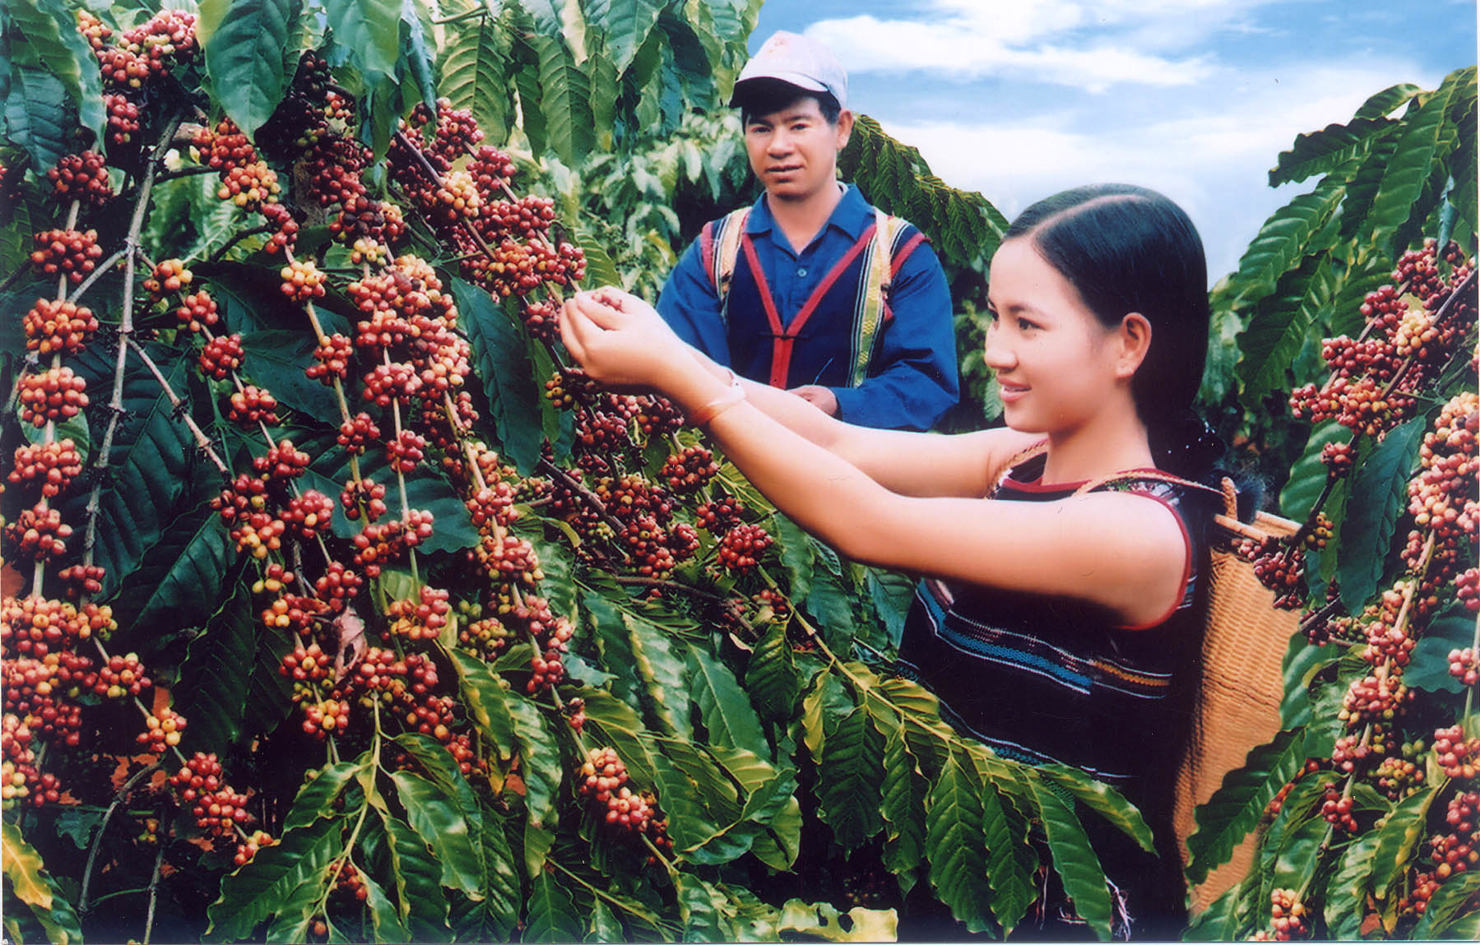  Dự án “Chuyển đổi nông nghiệp bền vững tại Việt Nam” được thực hiện từ năm 2015 đến năm 2020.